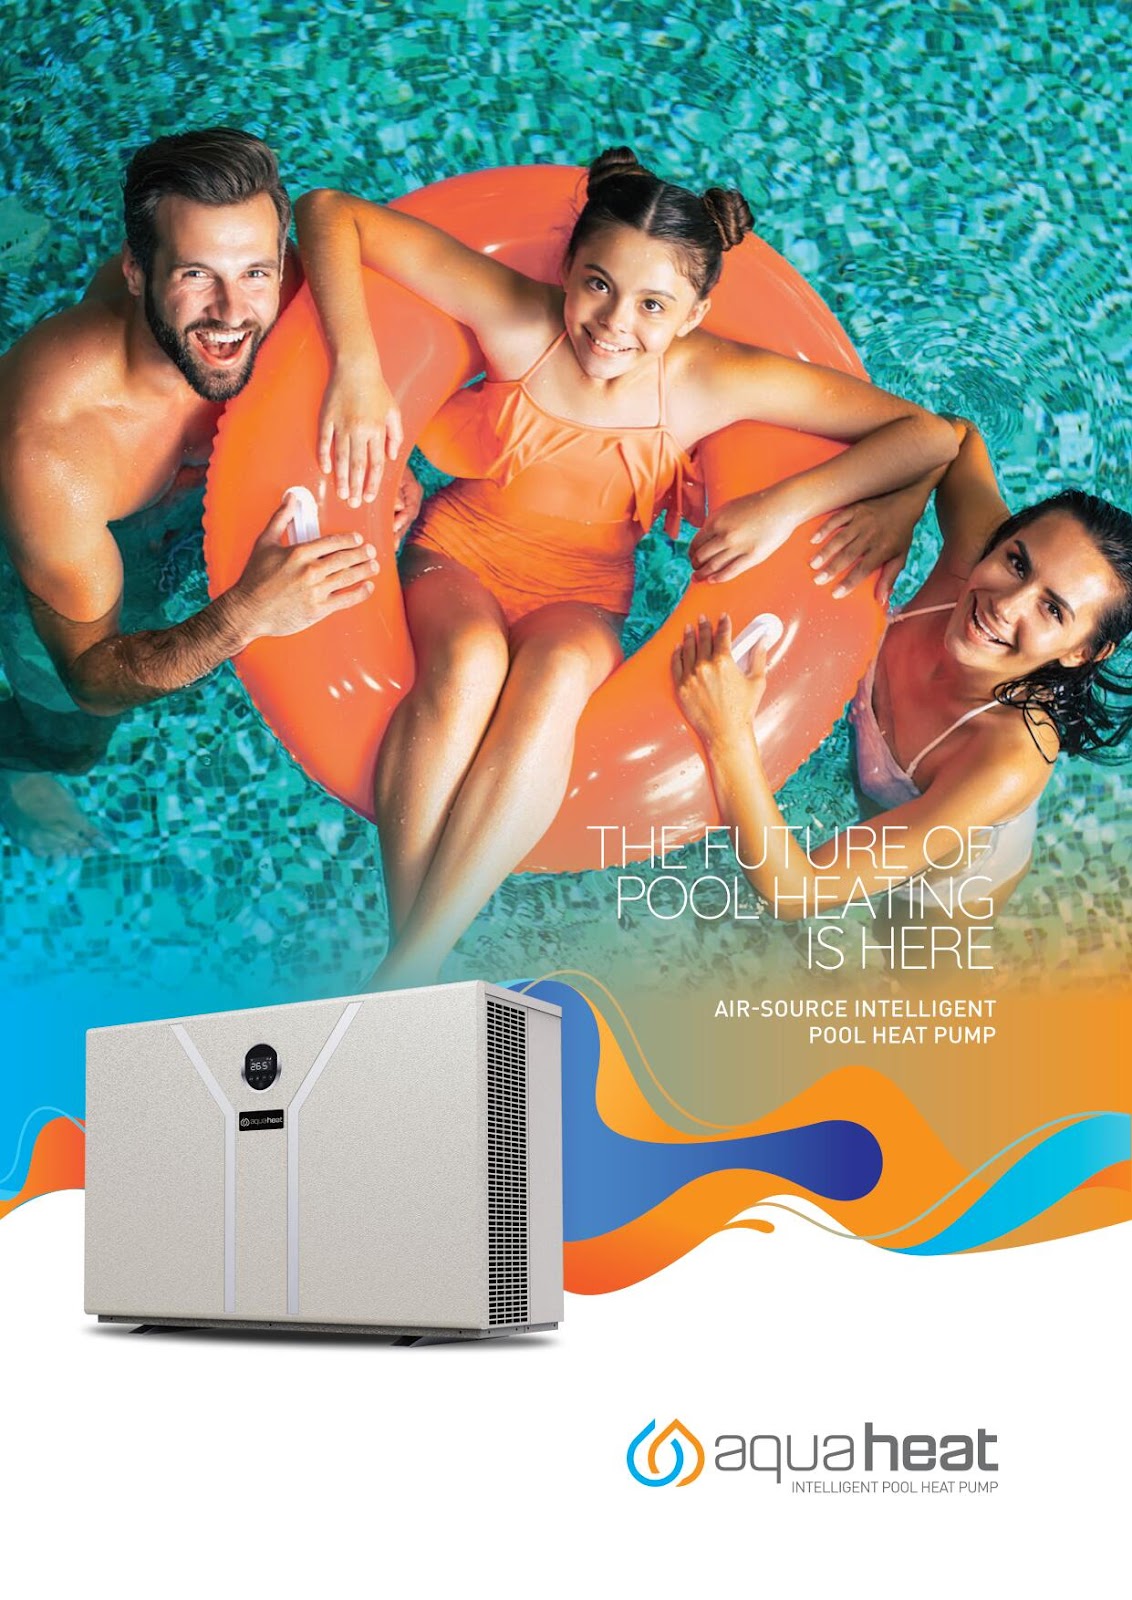 Aquaheat Intelligent Pool Heat Pump